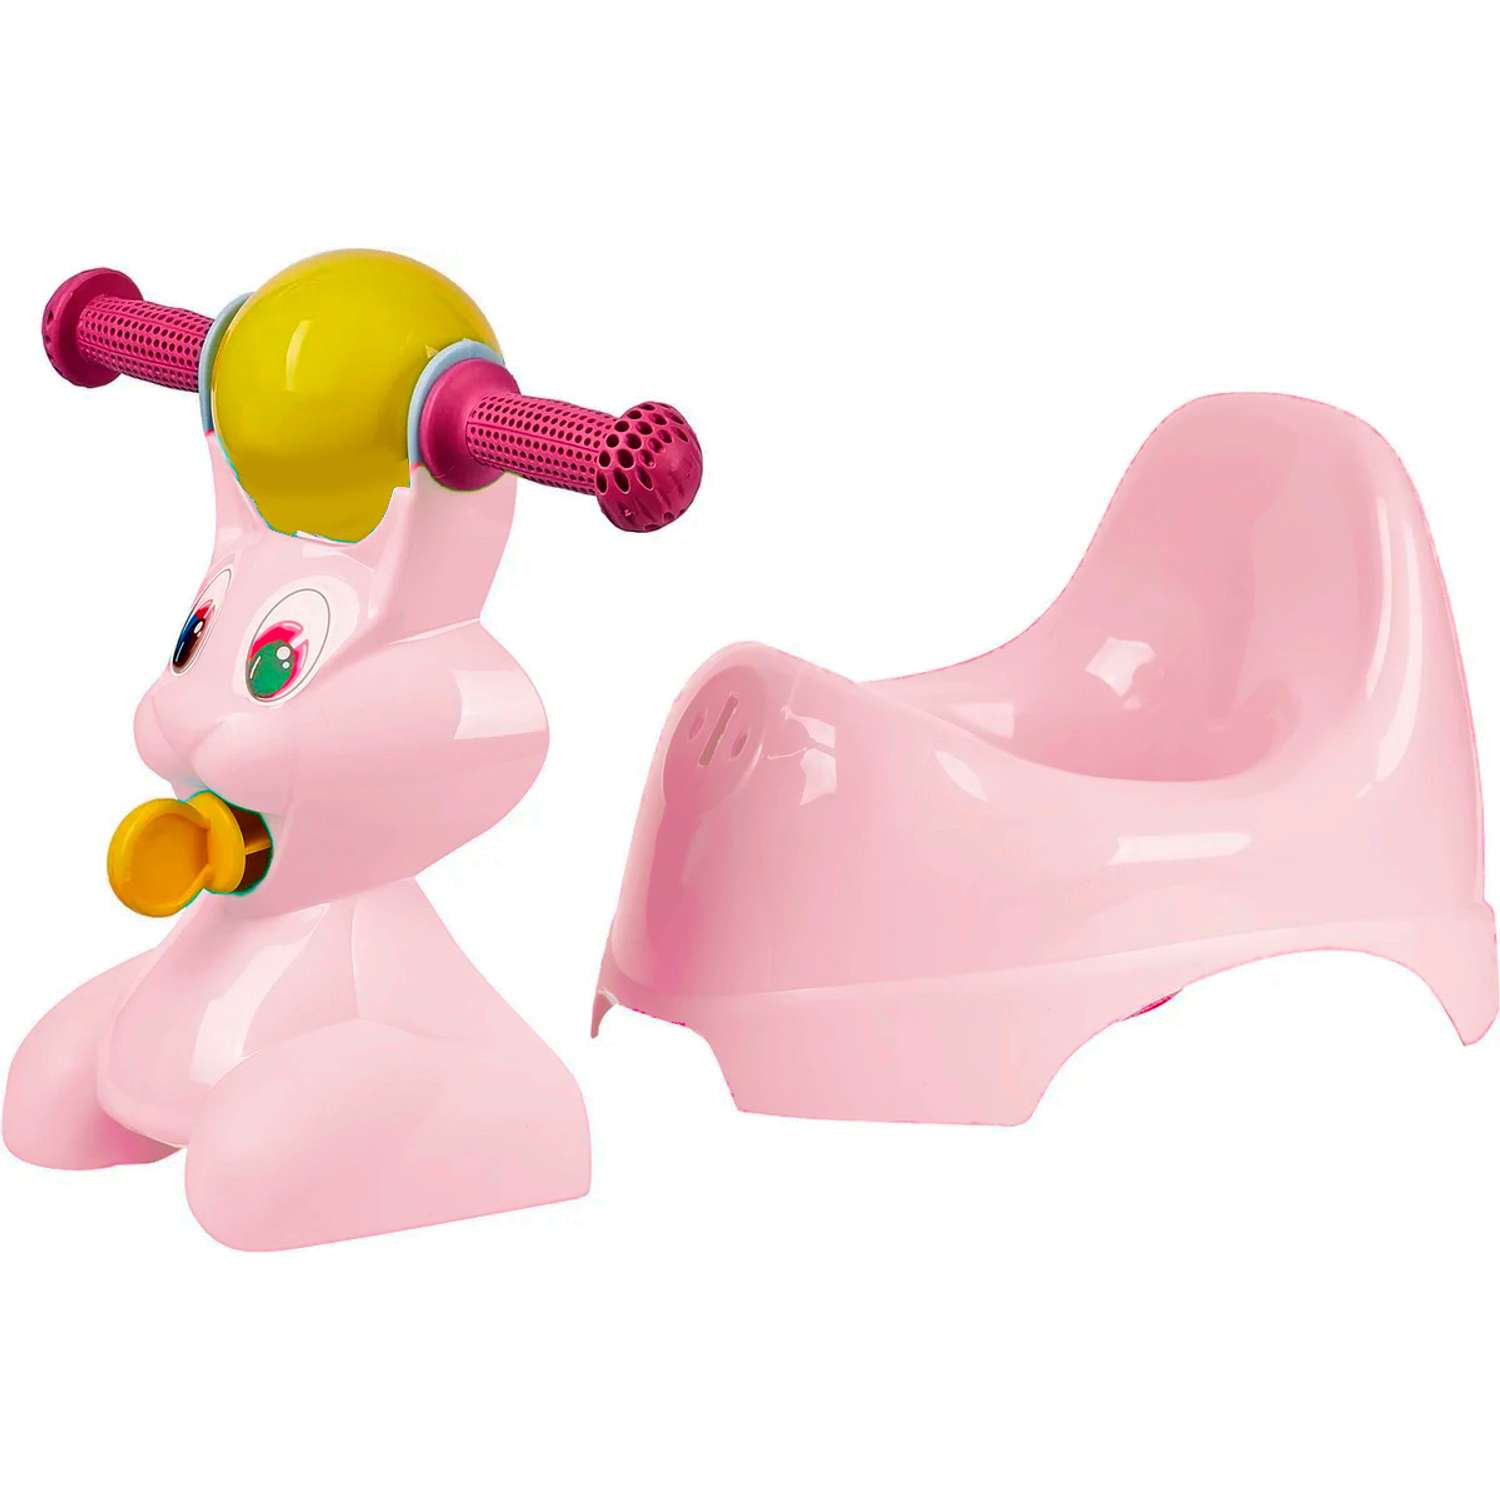 Горшок детский IDiland в форме игрушки Зайчик Lapsi розовый - фото 2